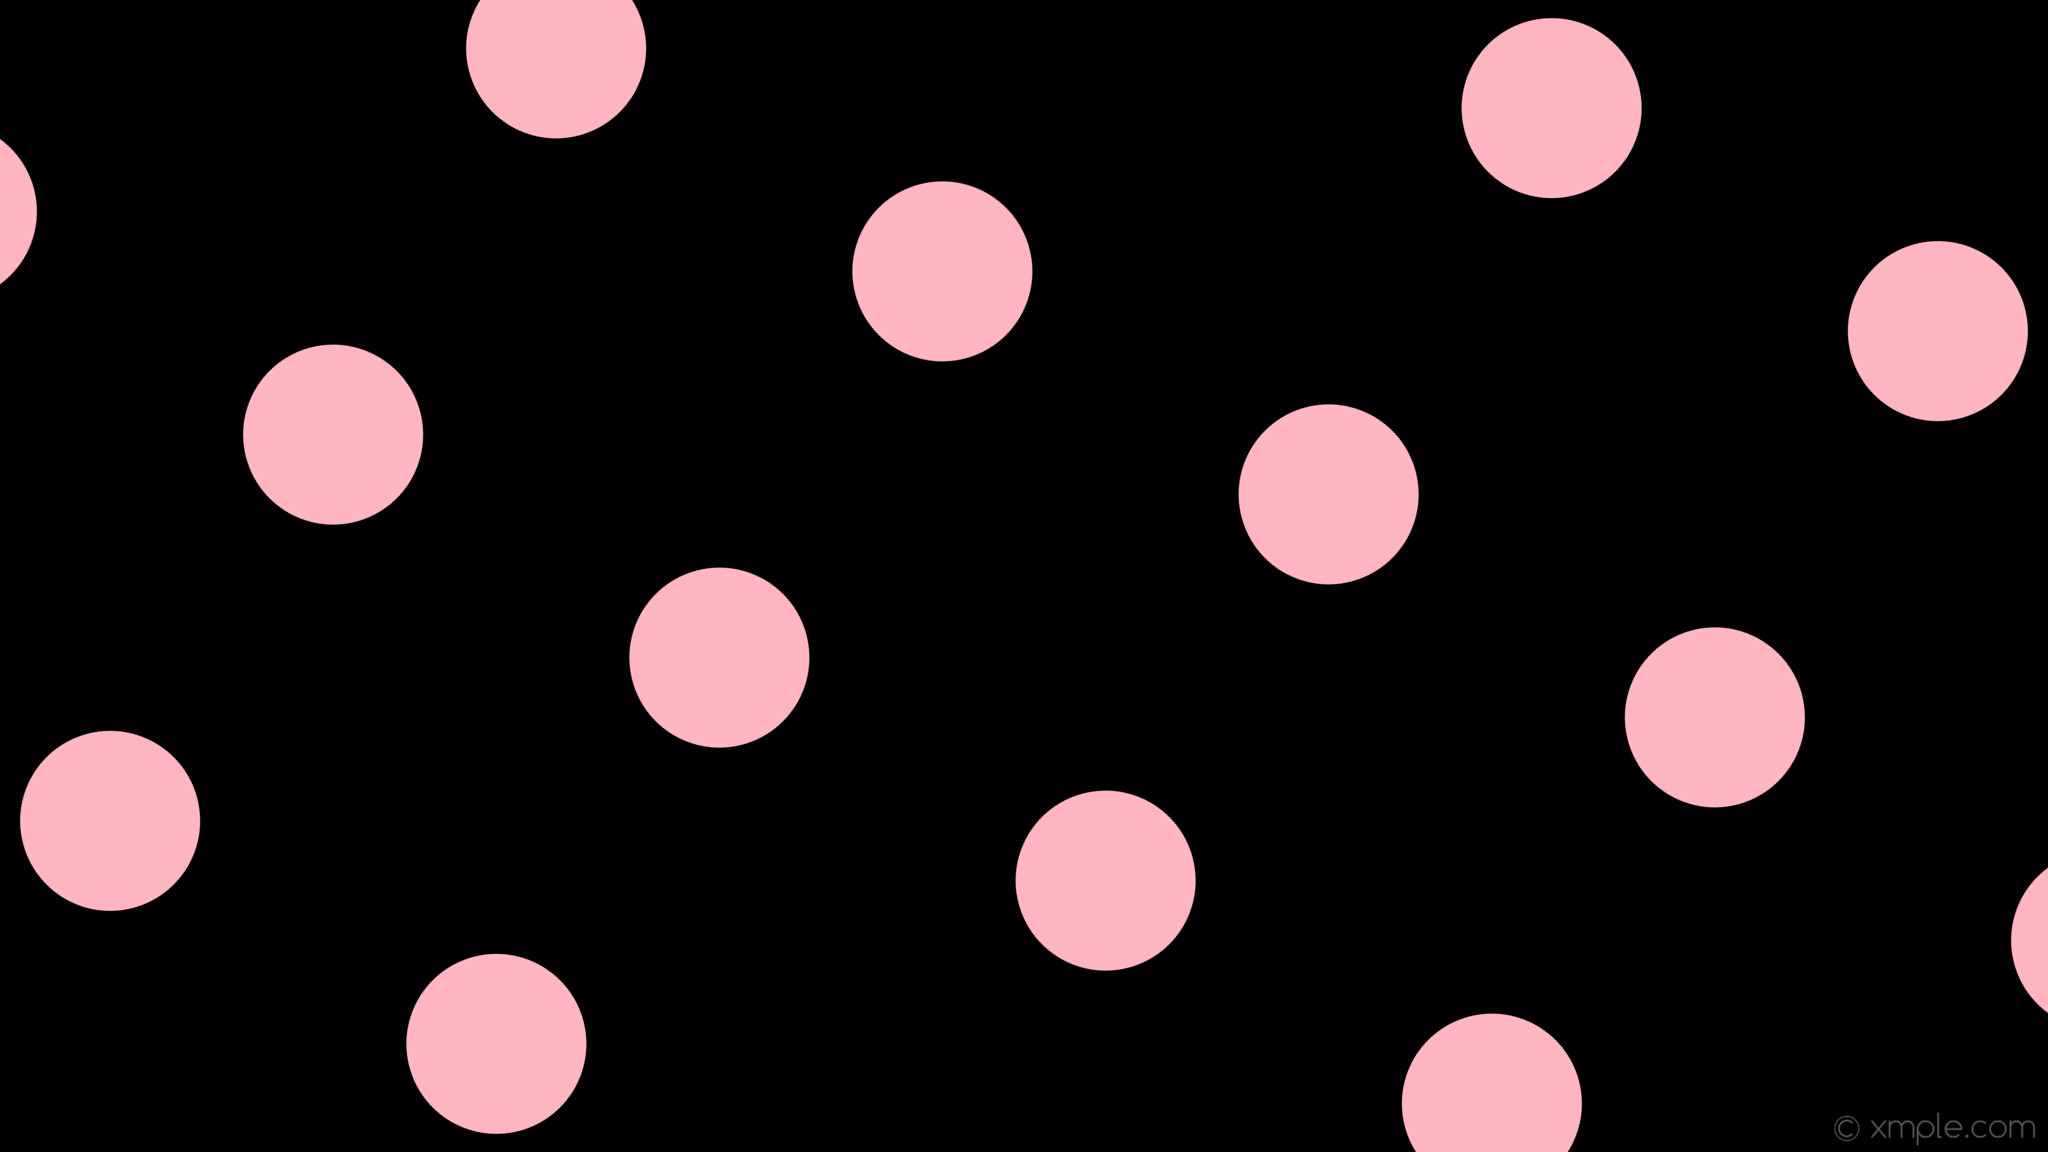 2048x1152 wallpaper pink black spots polka dots light pink #000000 #ffb6c1 330Â° 180px  446px